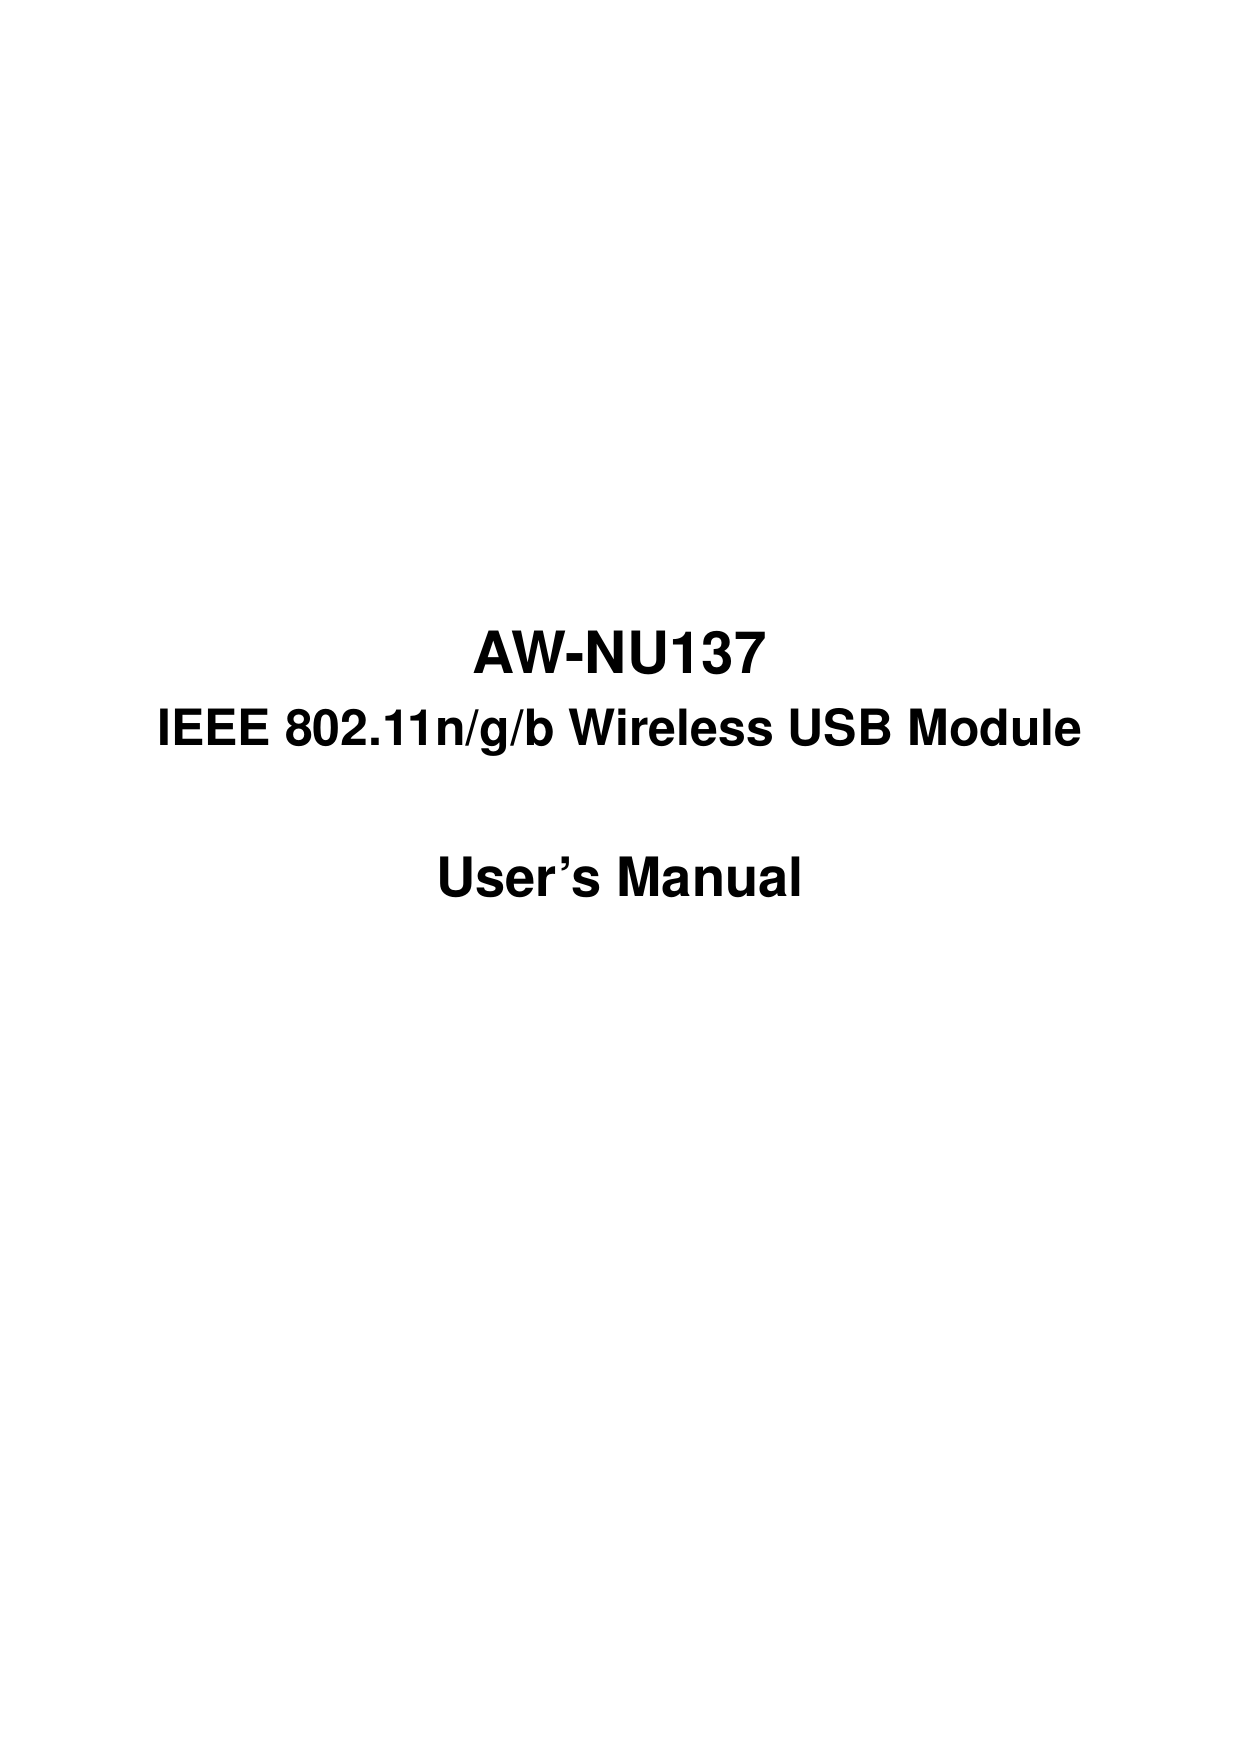              AW-NU137 IEEE 802.11n/g/b Wireless USB Module  User’s Manual           